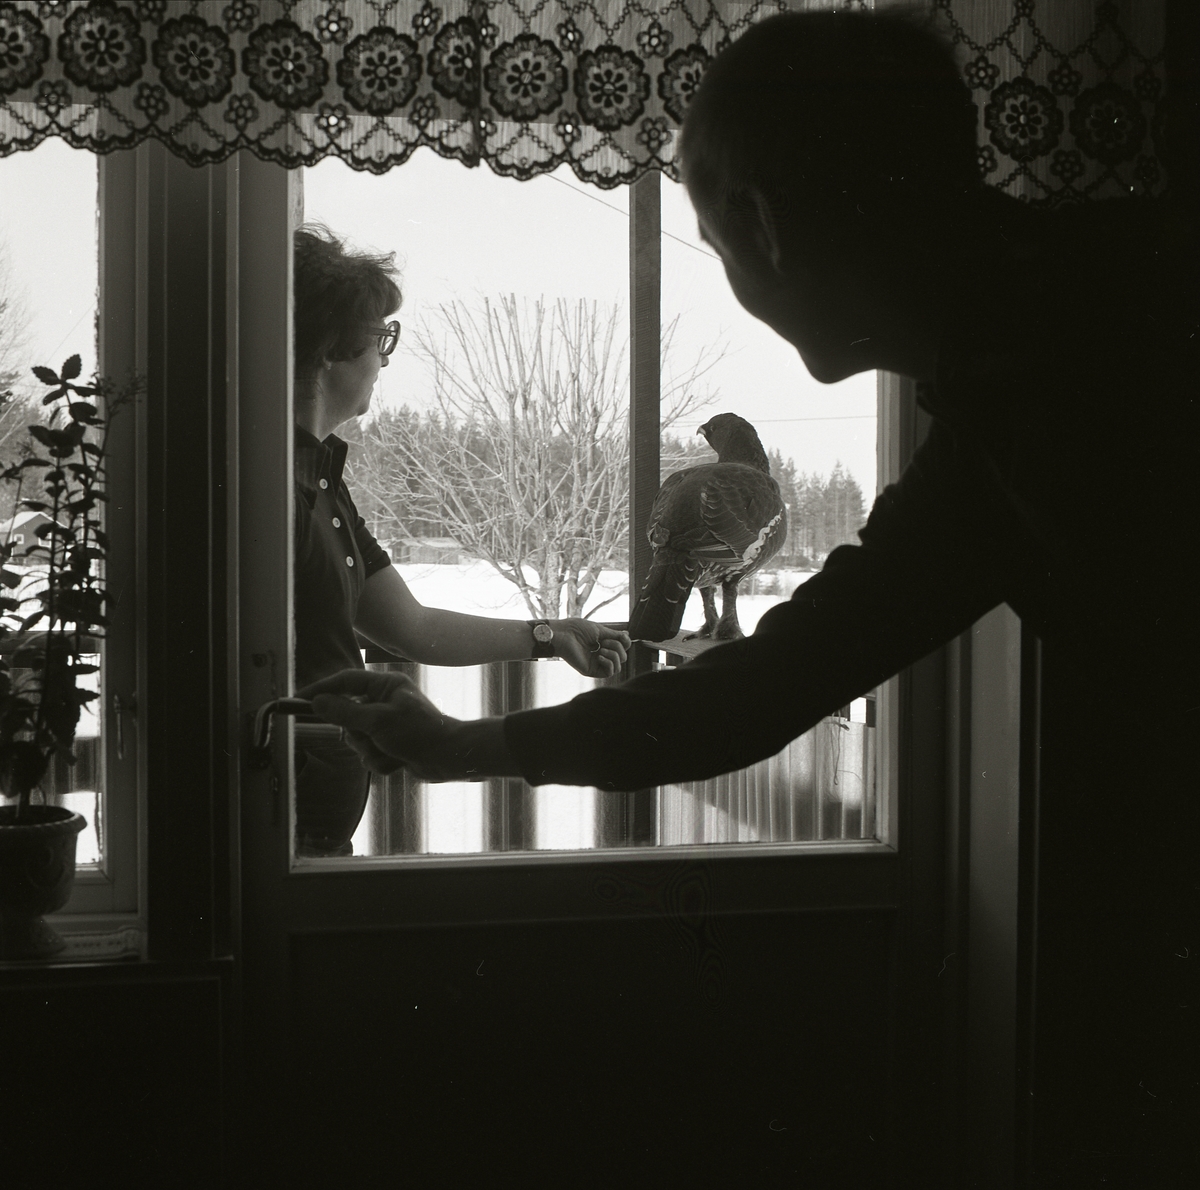 En man tittar ut genom fönsterrutan på en kvinna. Kvinnan står bredvid en tjädertupp och rör försiktigt vid dess stjärtfjädrar. Fågeln sitter på balkongräcket och utanför terassen ligger snön tjock.